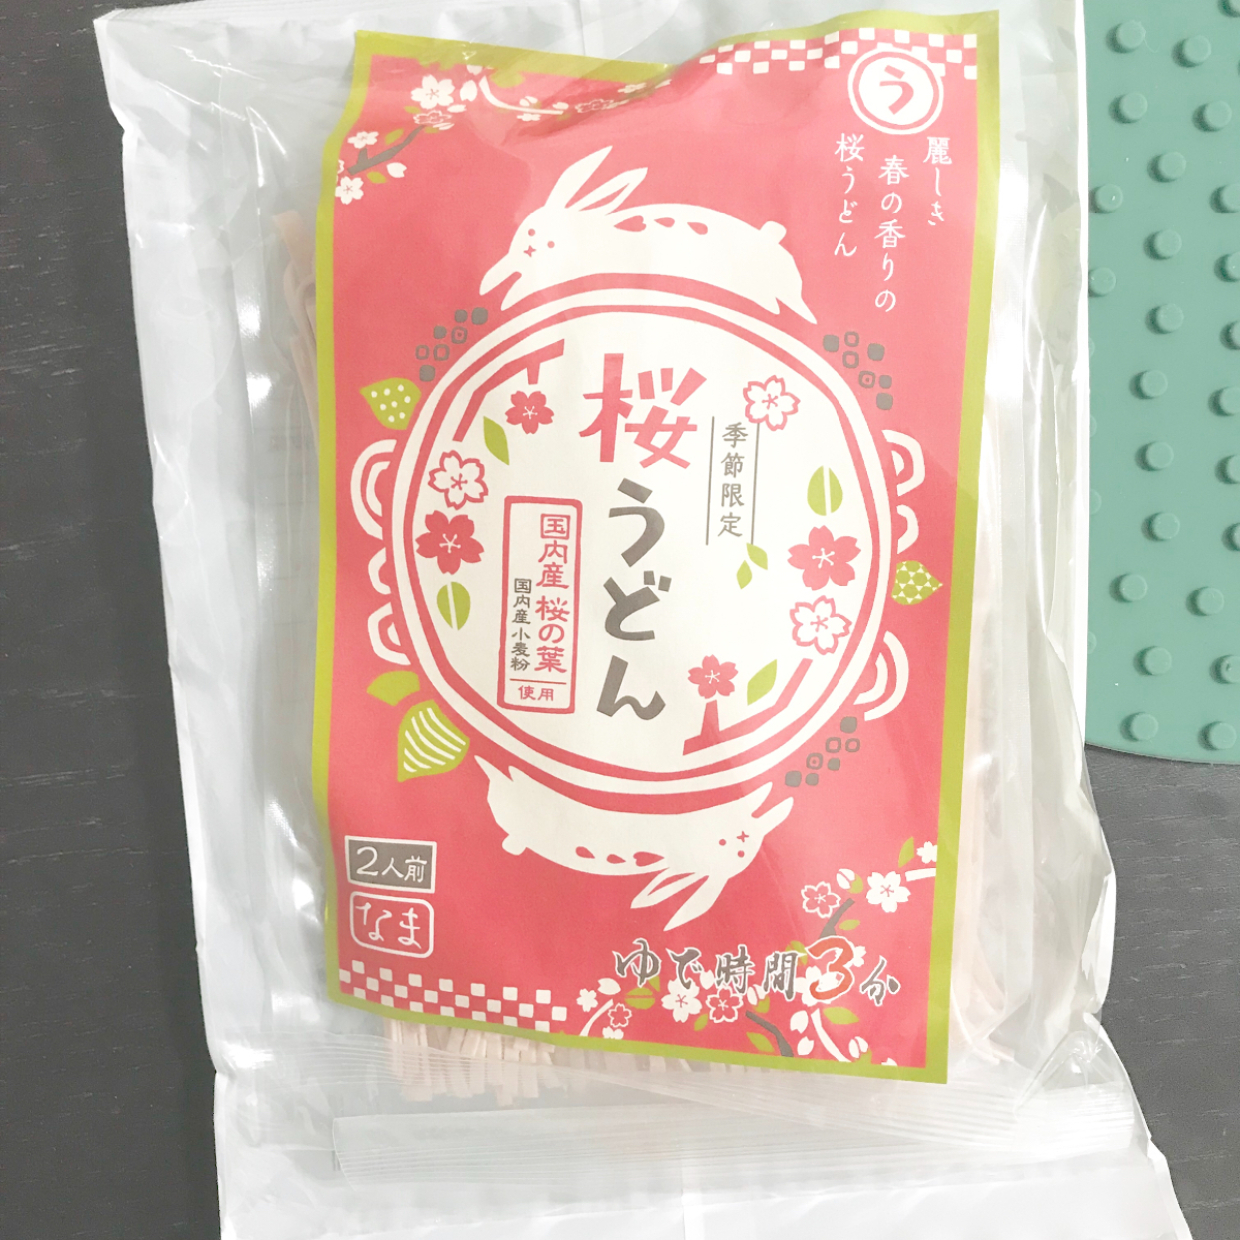  ひな祭りにも♪【カルディ】で見つけた桜うどんのピンク麺が可愛い♡ 